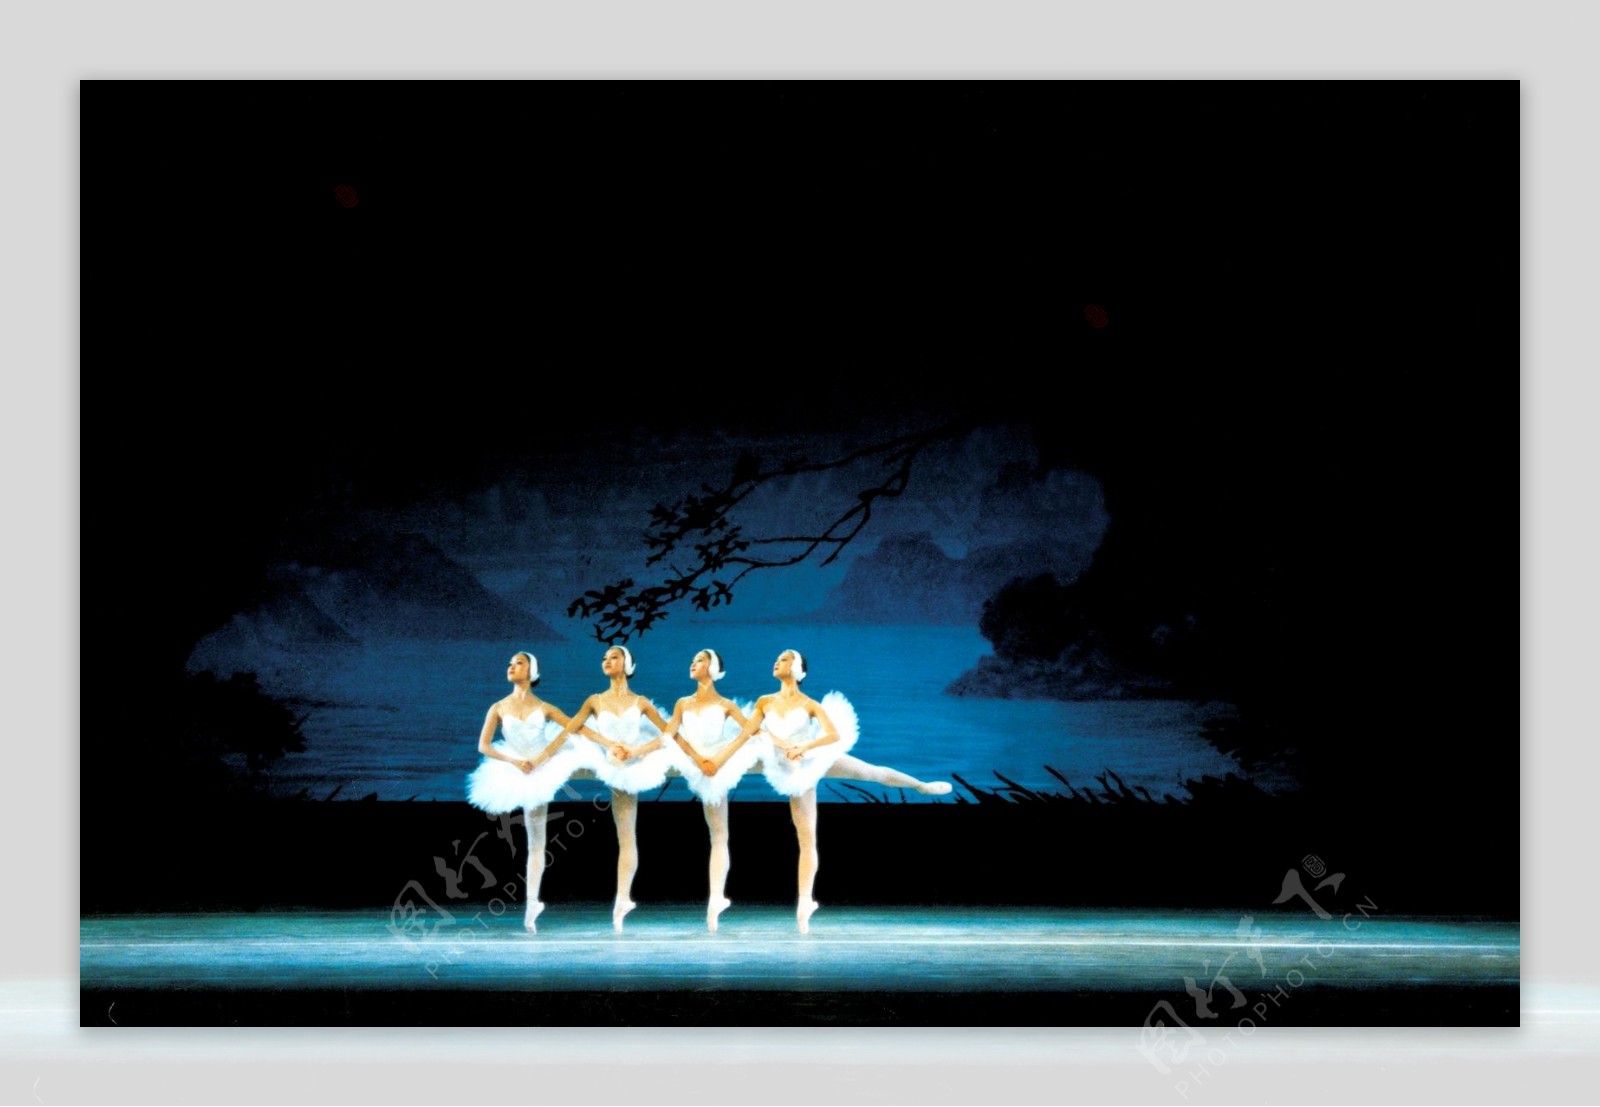 芭蕾舞天鹅湖4图片